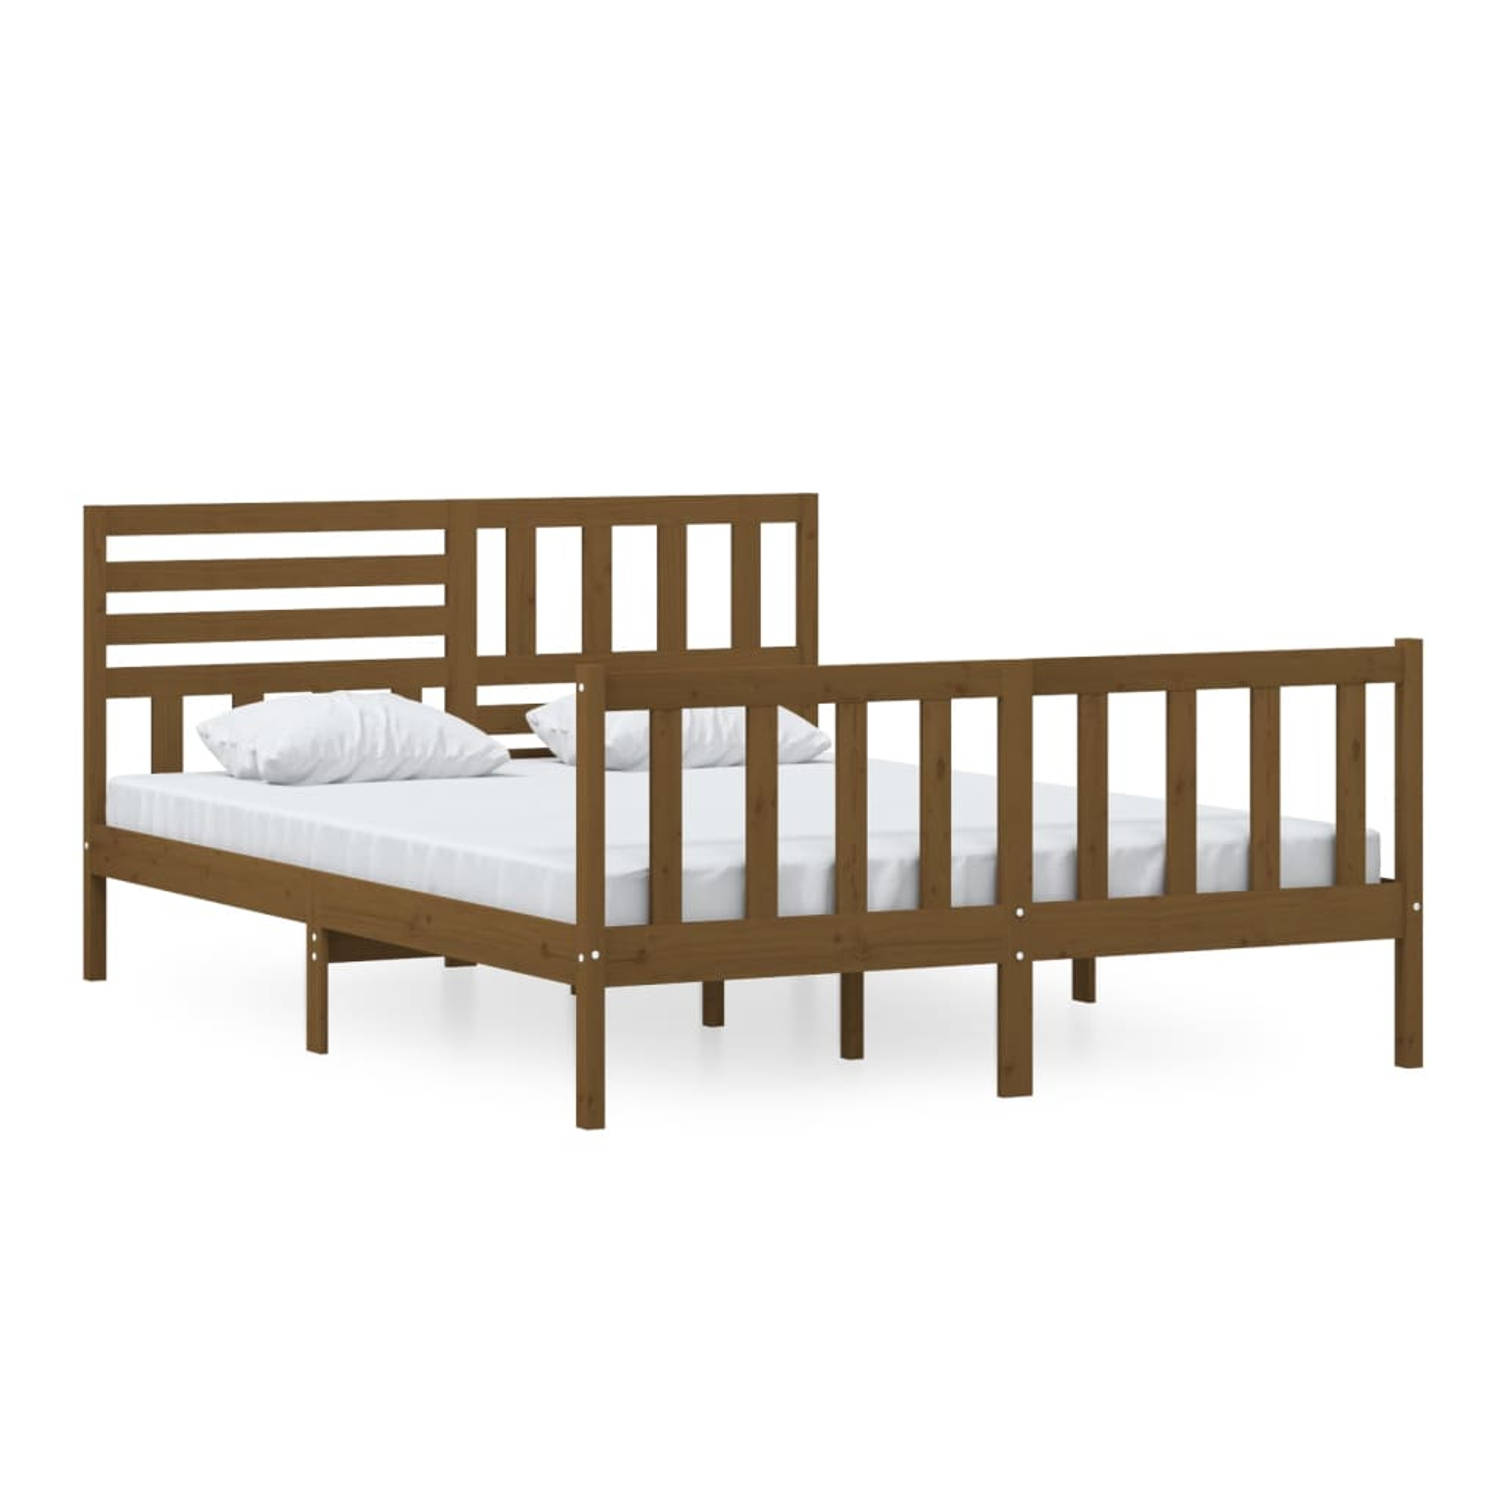 The Living Store Bedframe massief hout honingbruin 150x200 cm 5FT King Size - Bedframe - Bedframes - Tweepersoonsbed - Bed - Bedombouw - Dubbel Bed - Frame - Bed Frame - Ledikant -